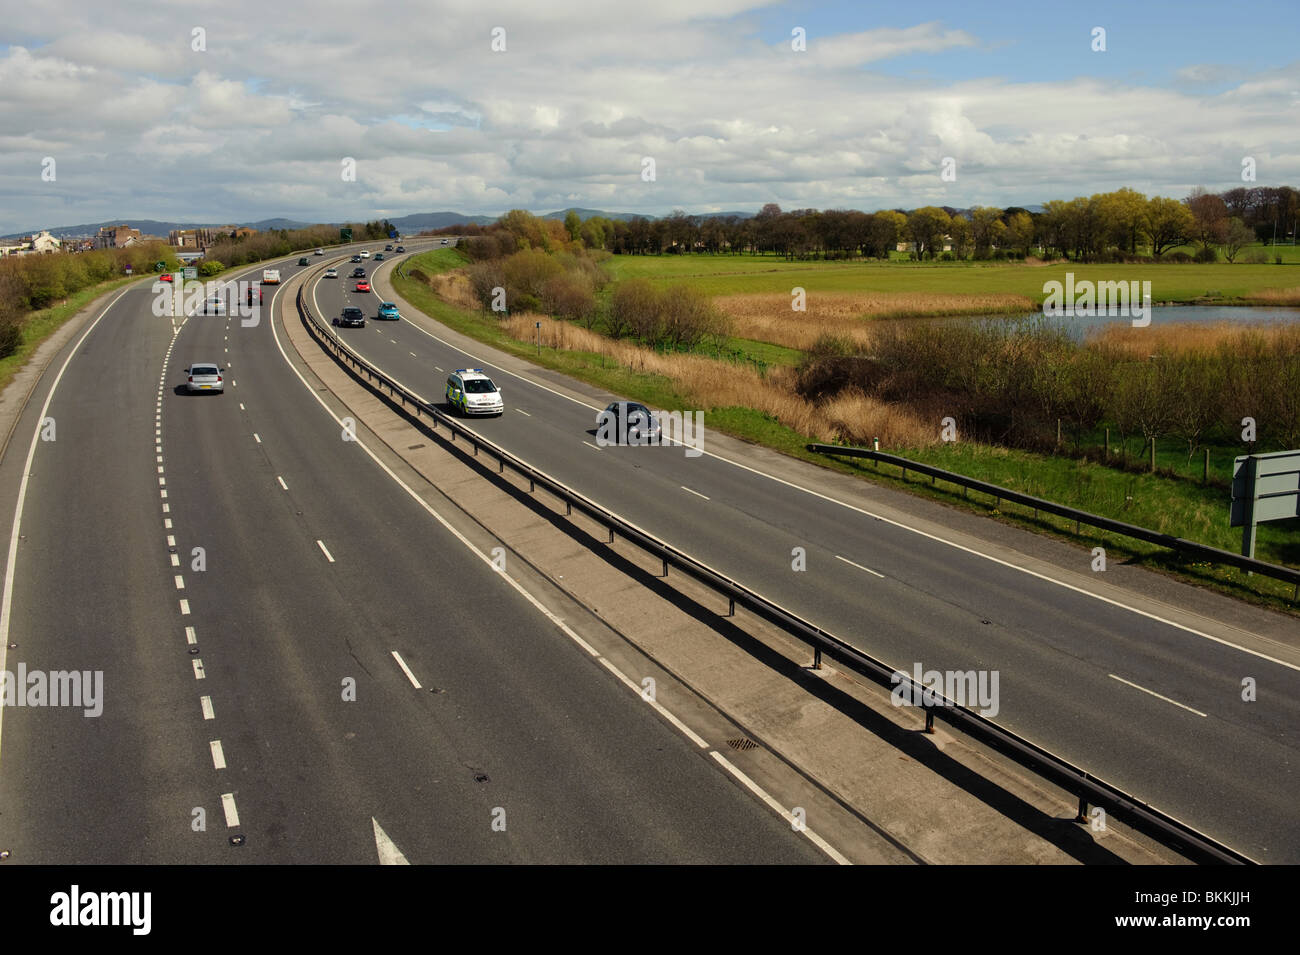 Le trafic sur l'autoroute A55 à deux voies route près de Muro, au nord du Pays de Galles UK Banque D'Images